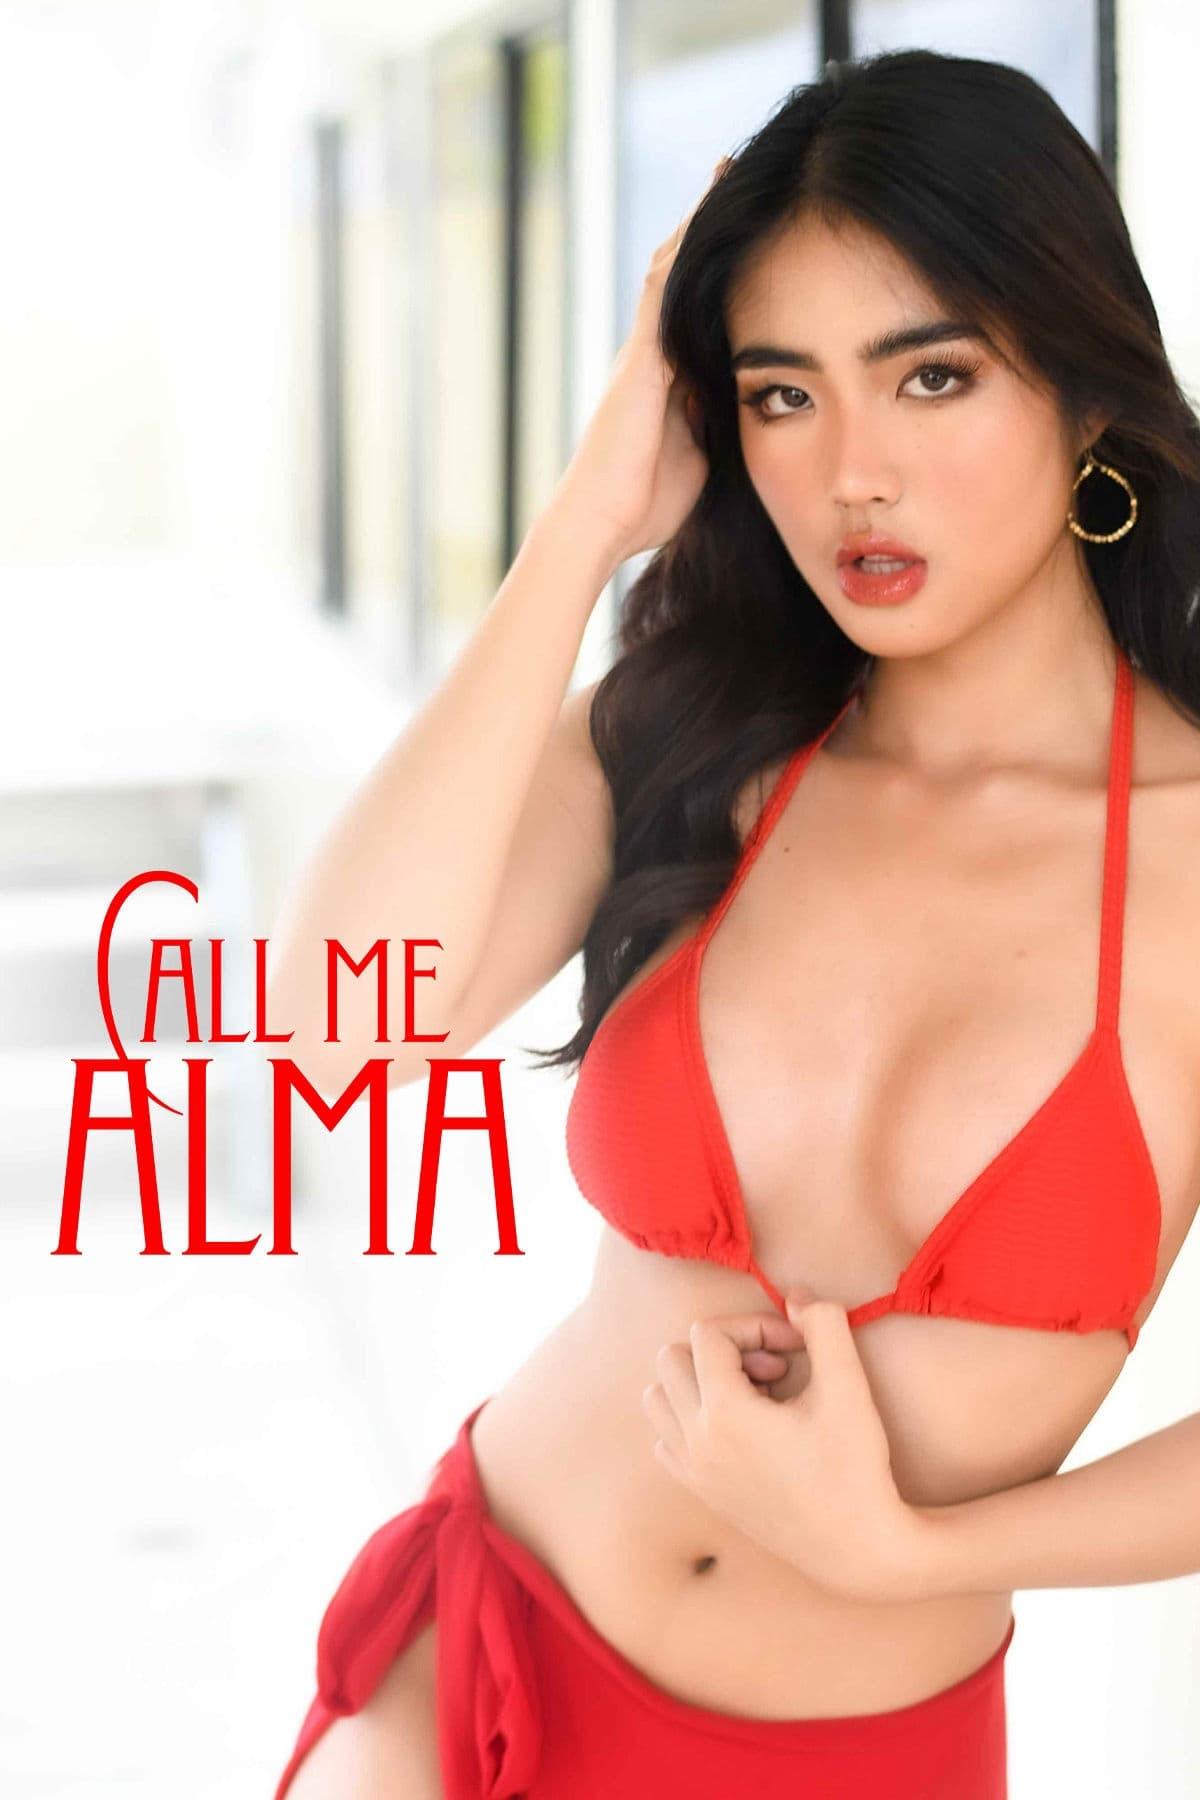 Call Me Alma poster